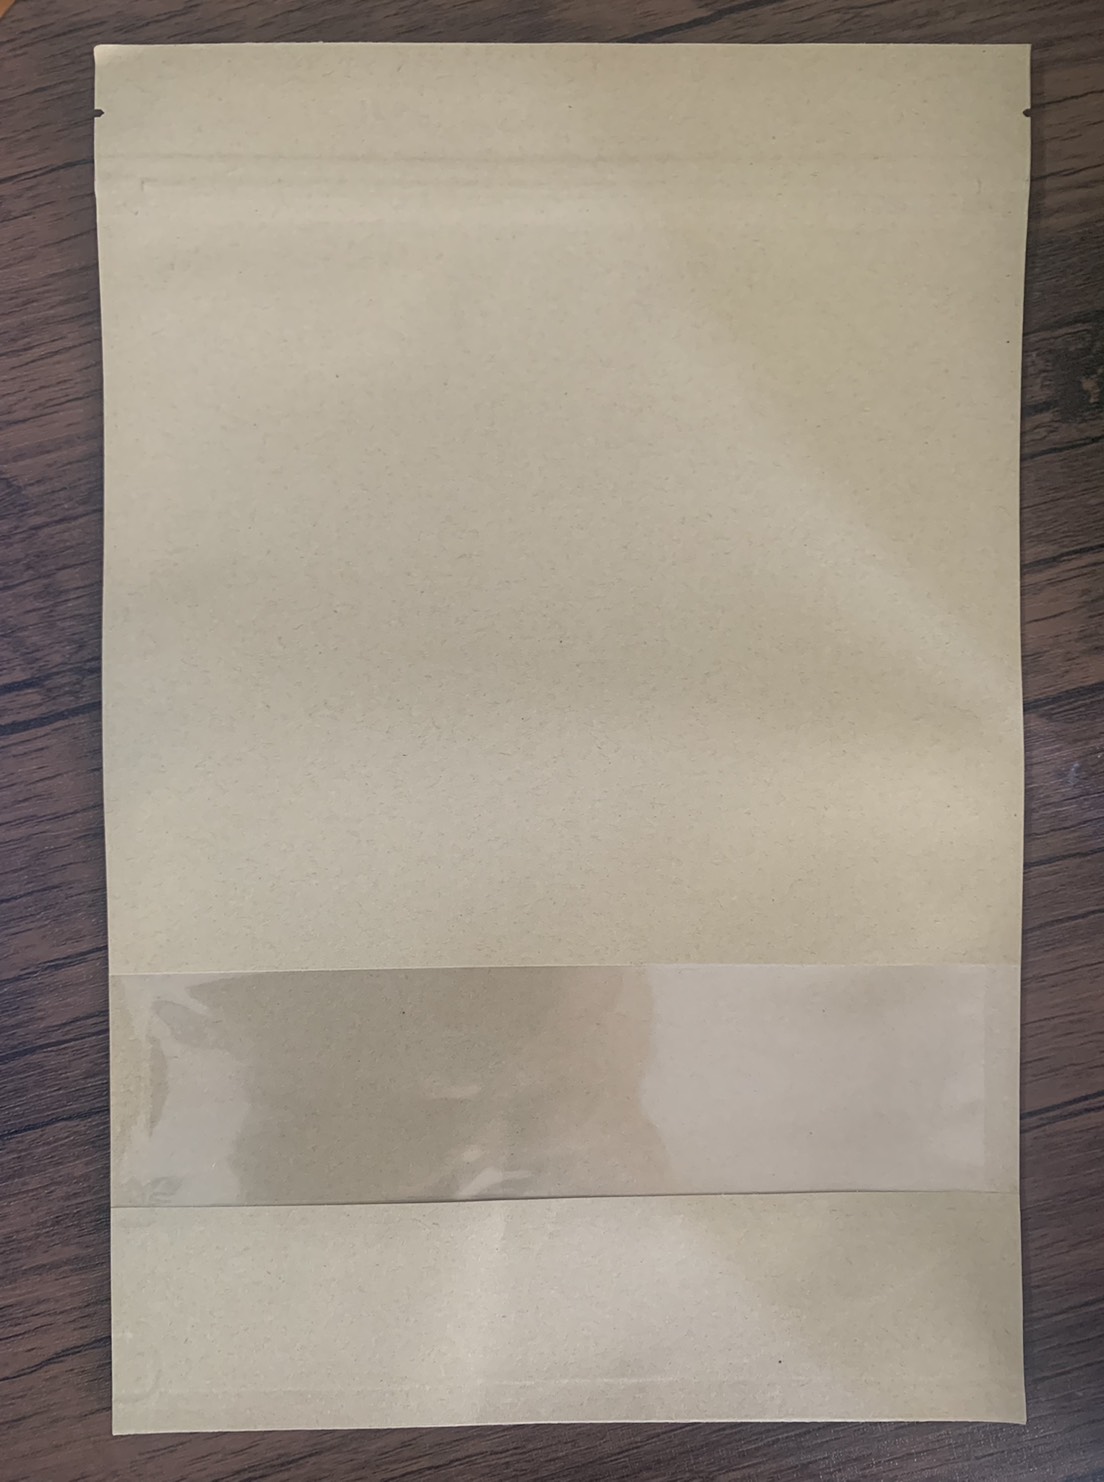 ถุงคราฟท์ ซิปล็อค 20x30 cm (แบบหนา)50ใบ/แพ็ค ถุงกระดาษ ถุงใส่ขนม ถุงใส่คุกกี้ ด้านหน้าเป็นพลาสติกใส No Brand